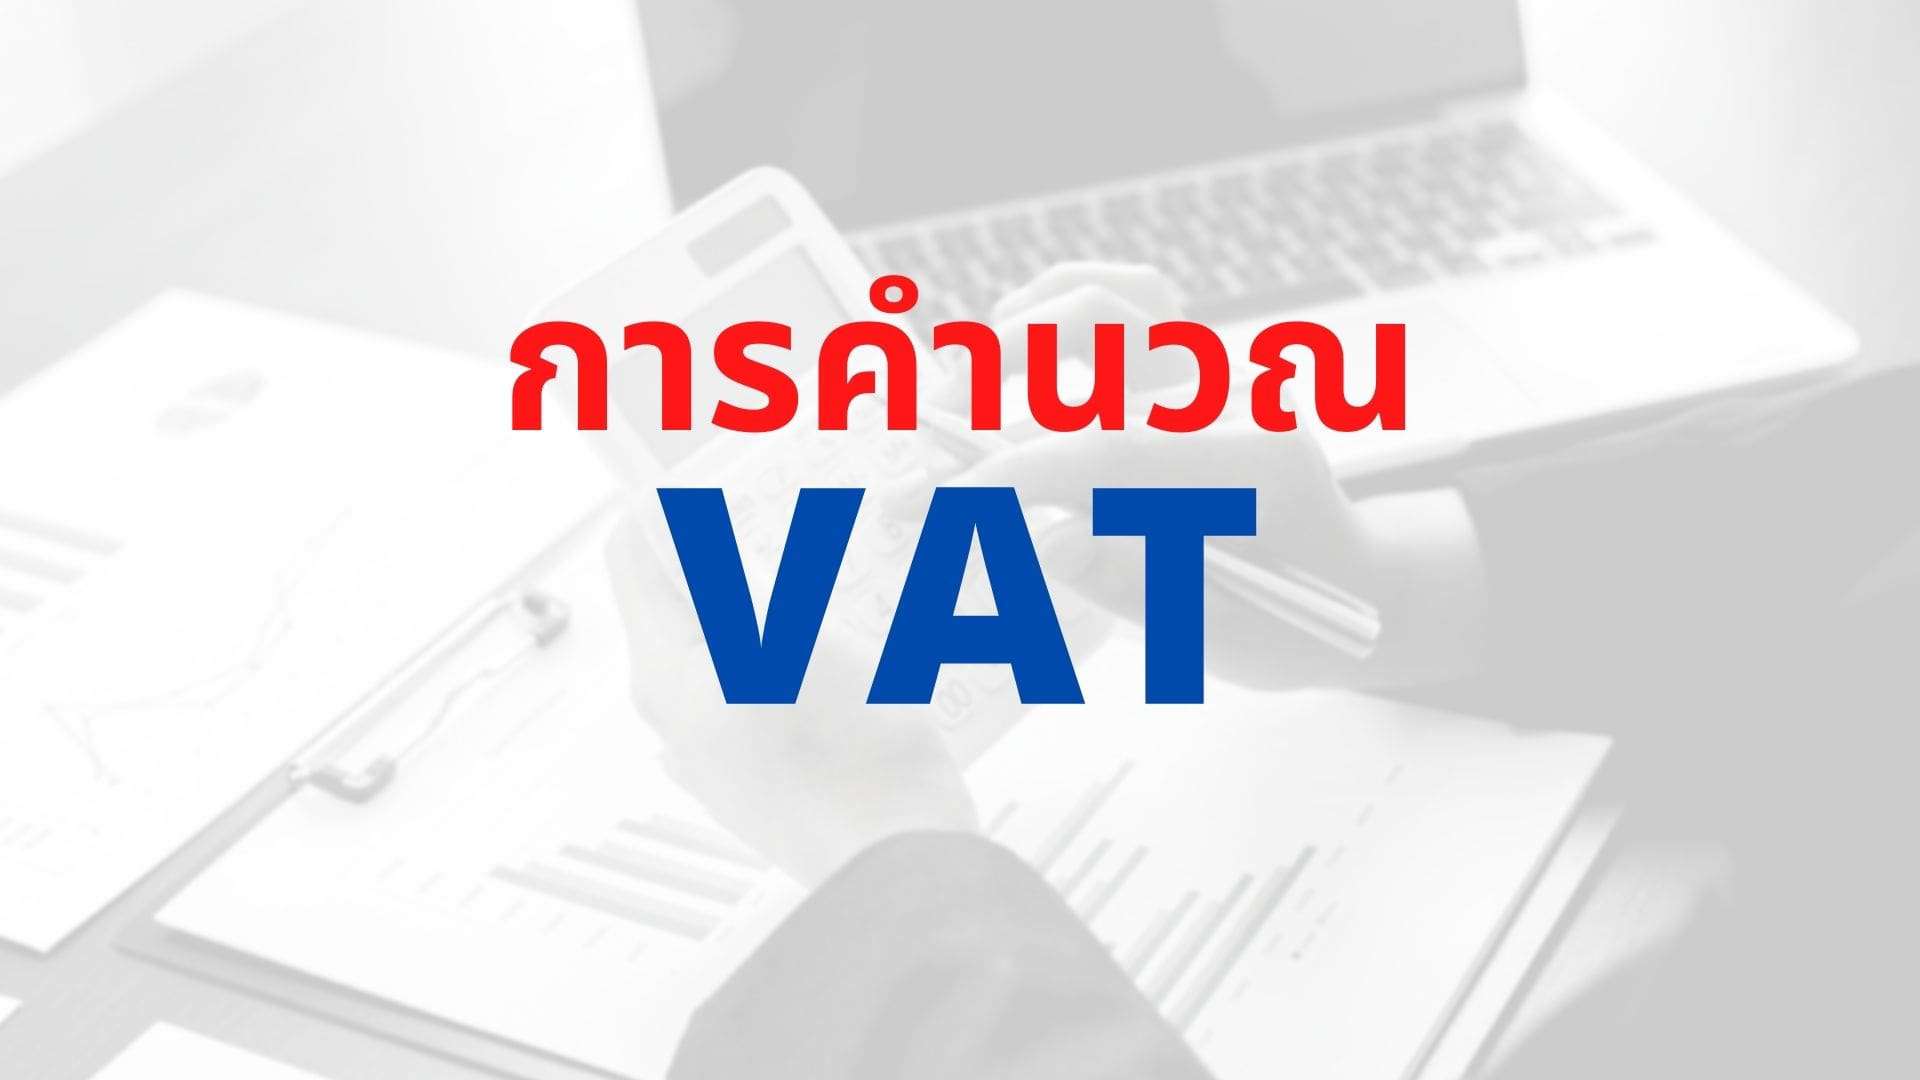 วิธีคำนวณภาษีมูลค่าเพิ่ม (Vat) ที่คนทำธุรกิจต้องรู้ - Thai Winner